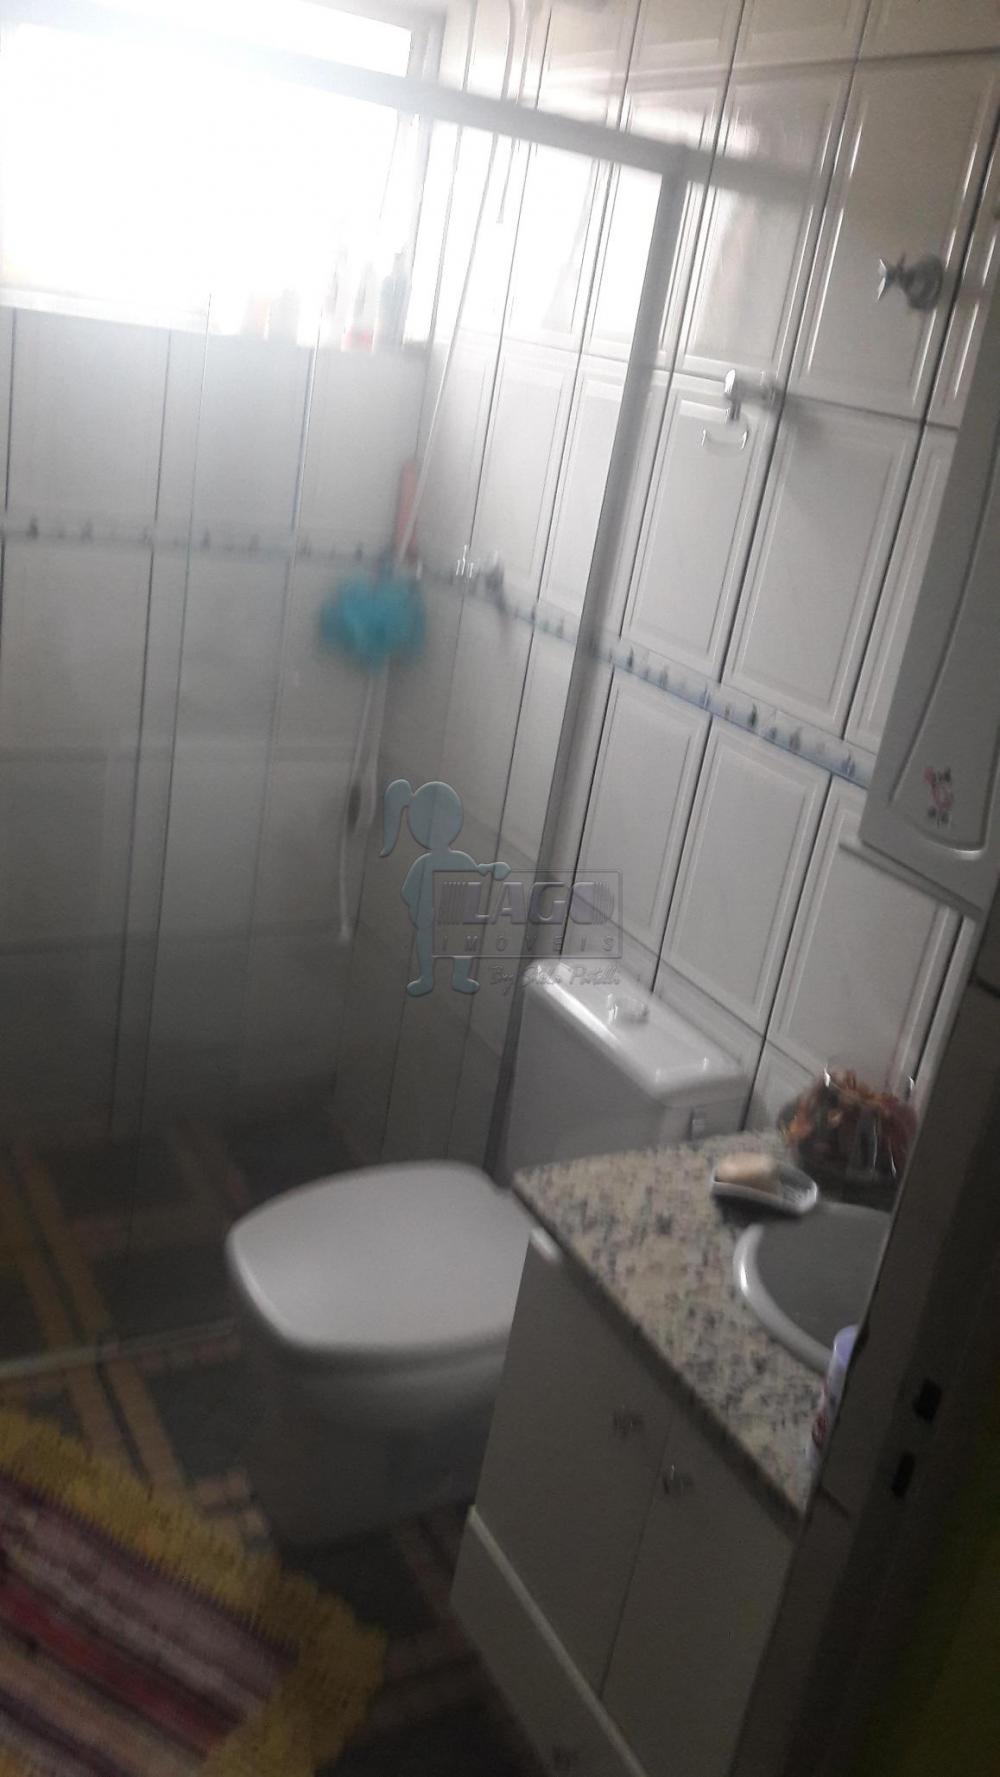 Comprar Apartamentos / Padrão em Ribeirão Preto R$ 130.000,00 - Foto 8